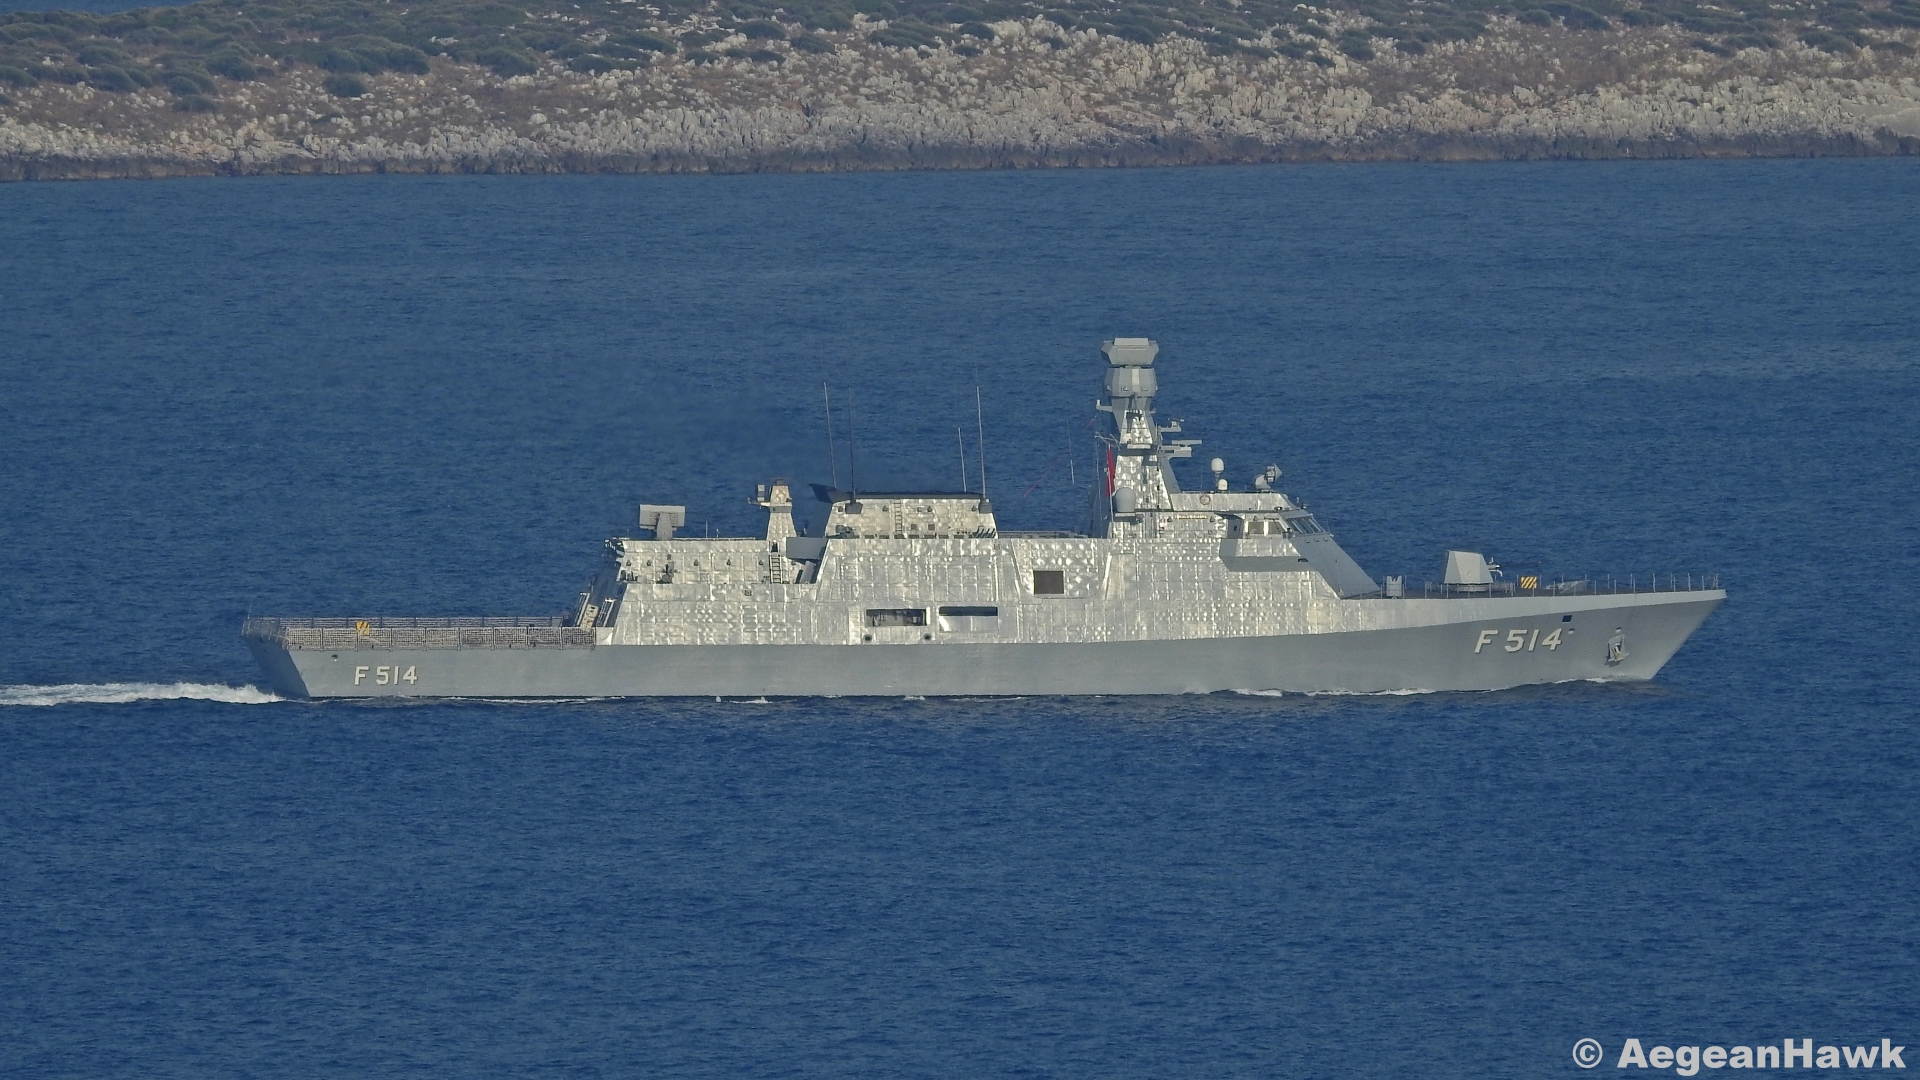 Τουρκικό Ναυτικό: Συνεχίζεται η συγκέντρωση ναυτικών δυνάμεων- Ακόμη μια κορβέτα πλέει προς το Ν.Α.Αιγαίο (βίντεο)